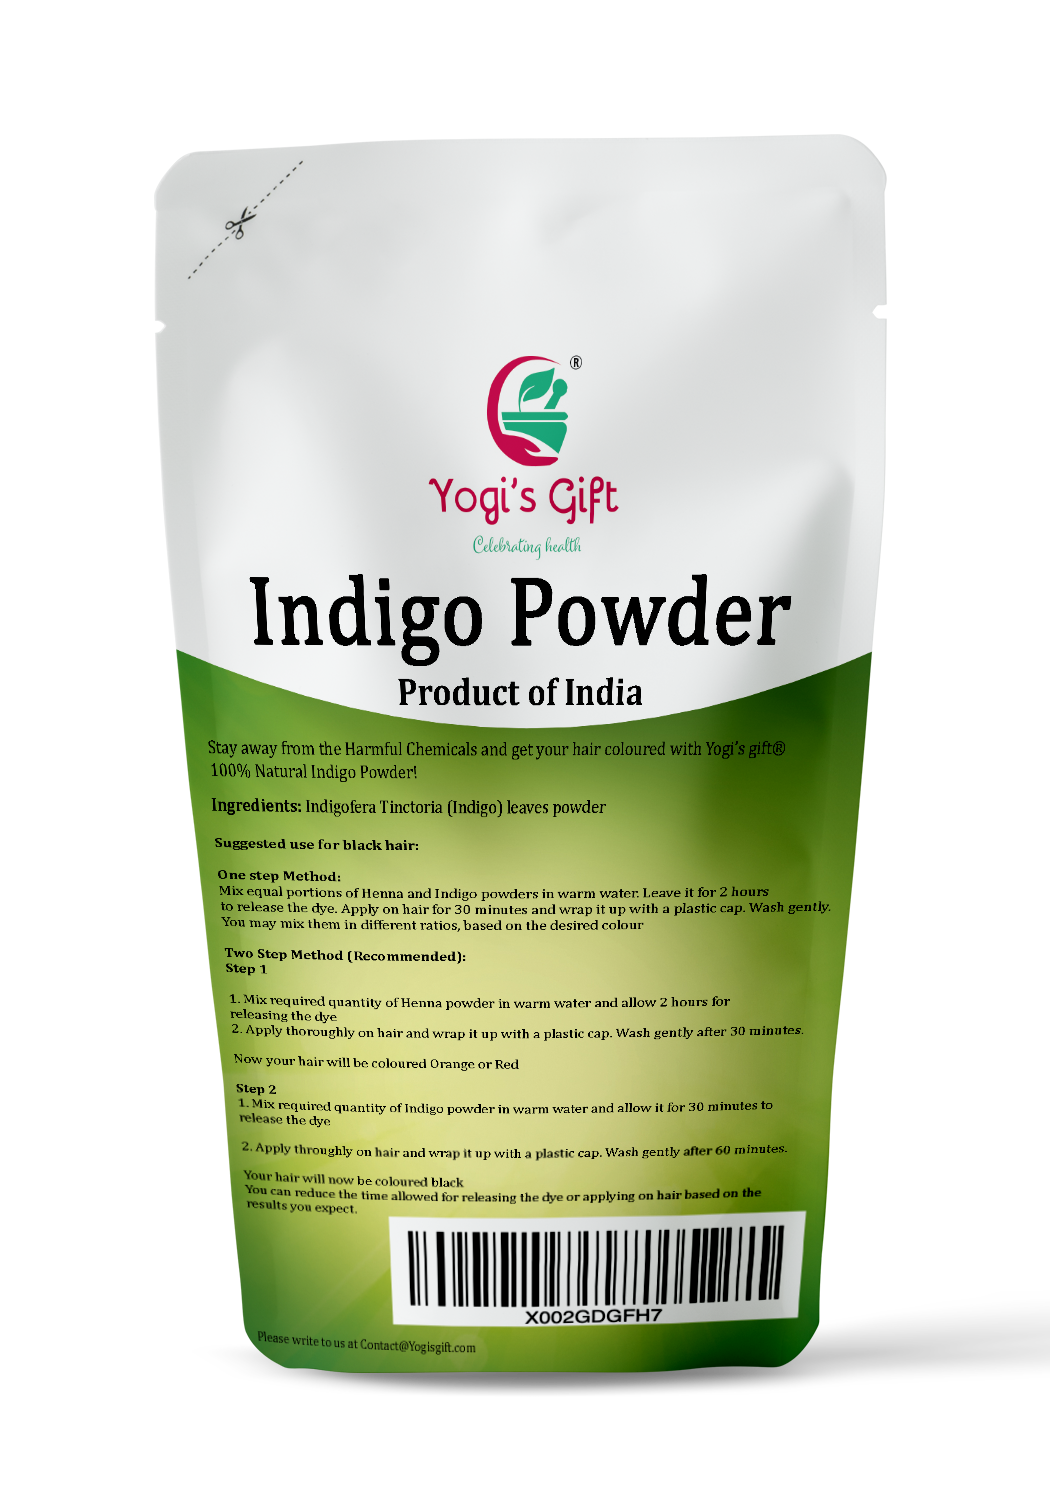 Natural Healthlife Care 100% Natural Indigo Powder (Indigofera Tinctoria)  (227g / (1/2 lb) / 8 ounces)